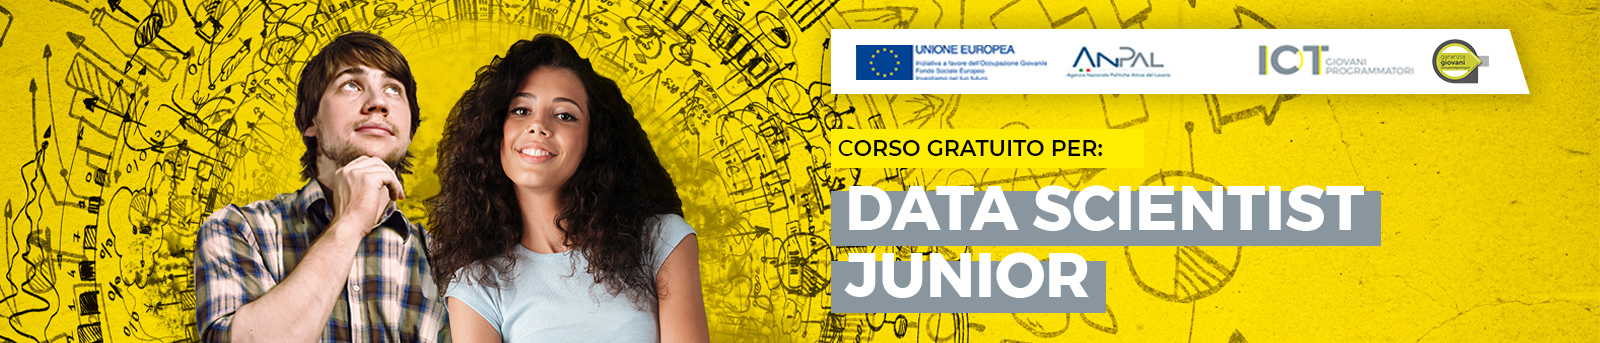 Corso gratuito Data scientist junior Roma